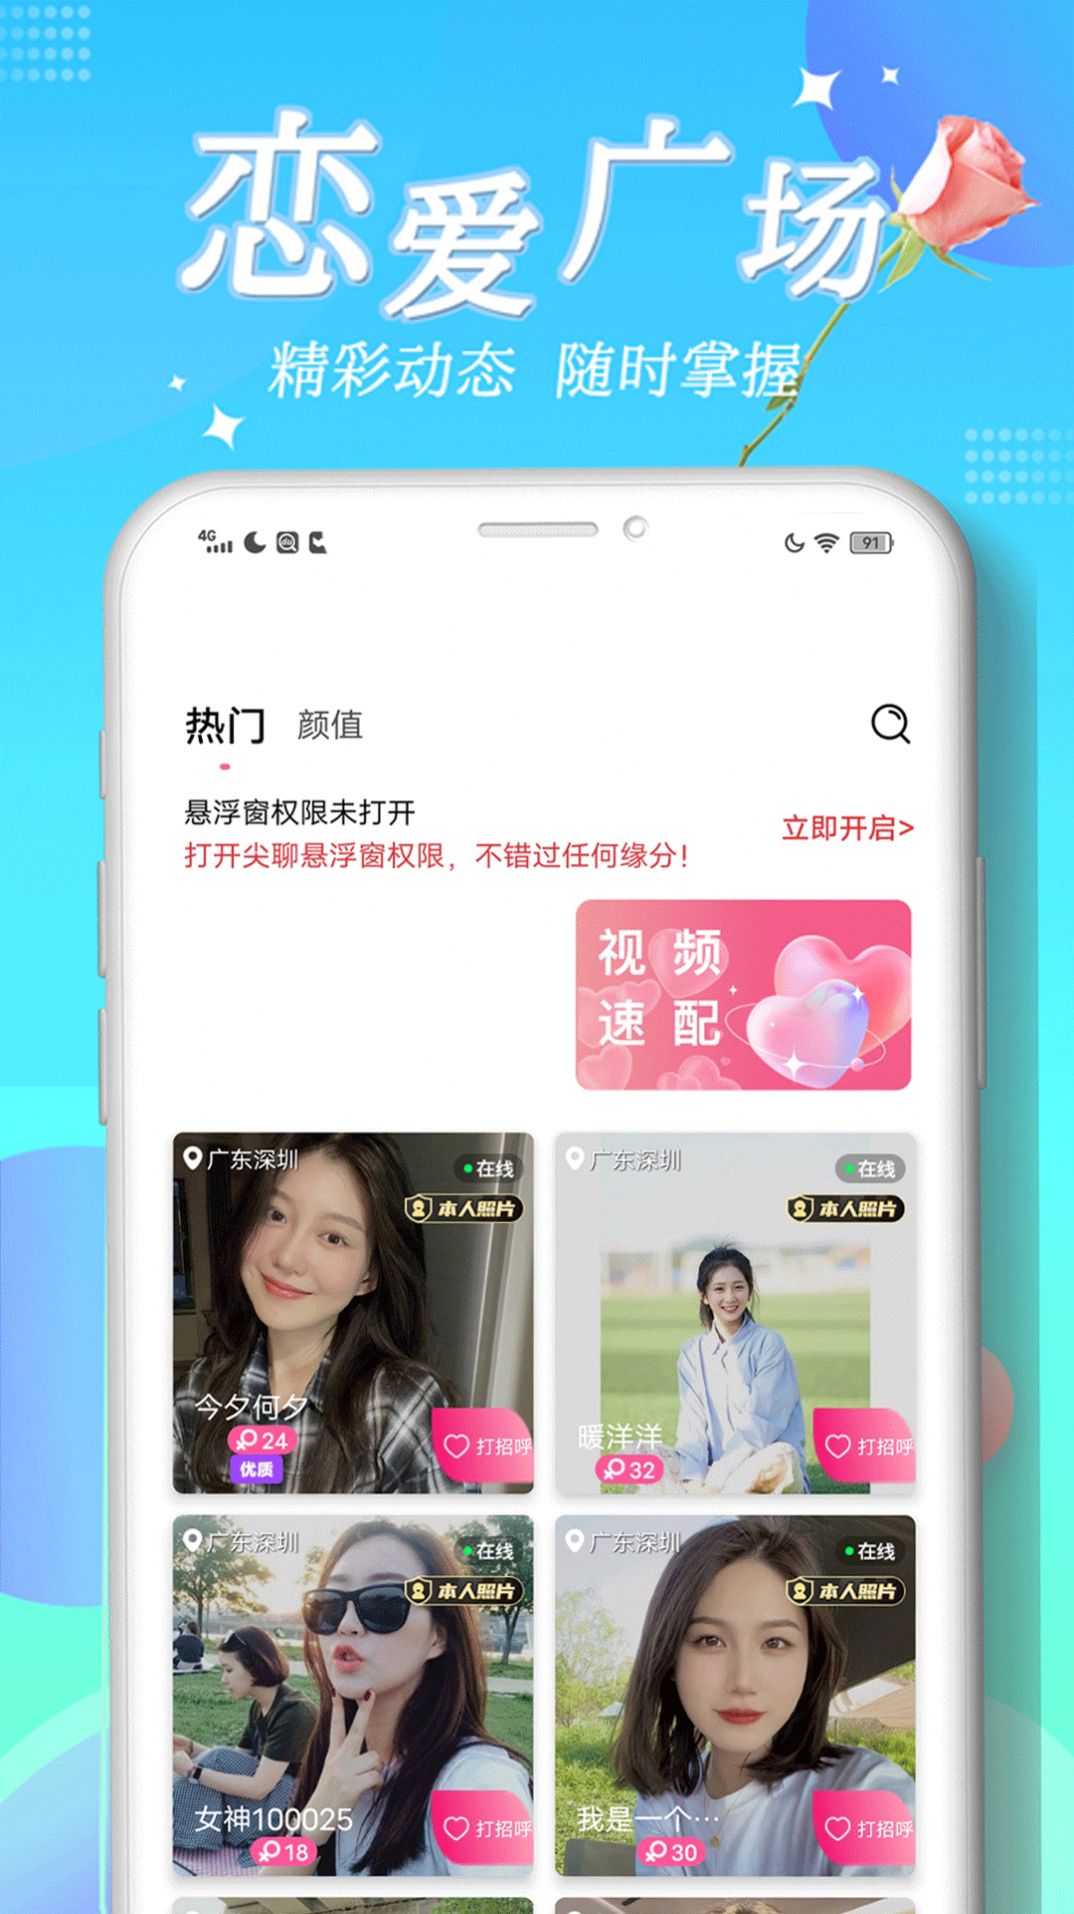 尖聊交友安卓版app官方下载图片1